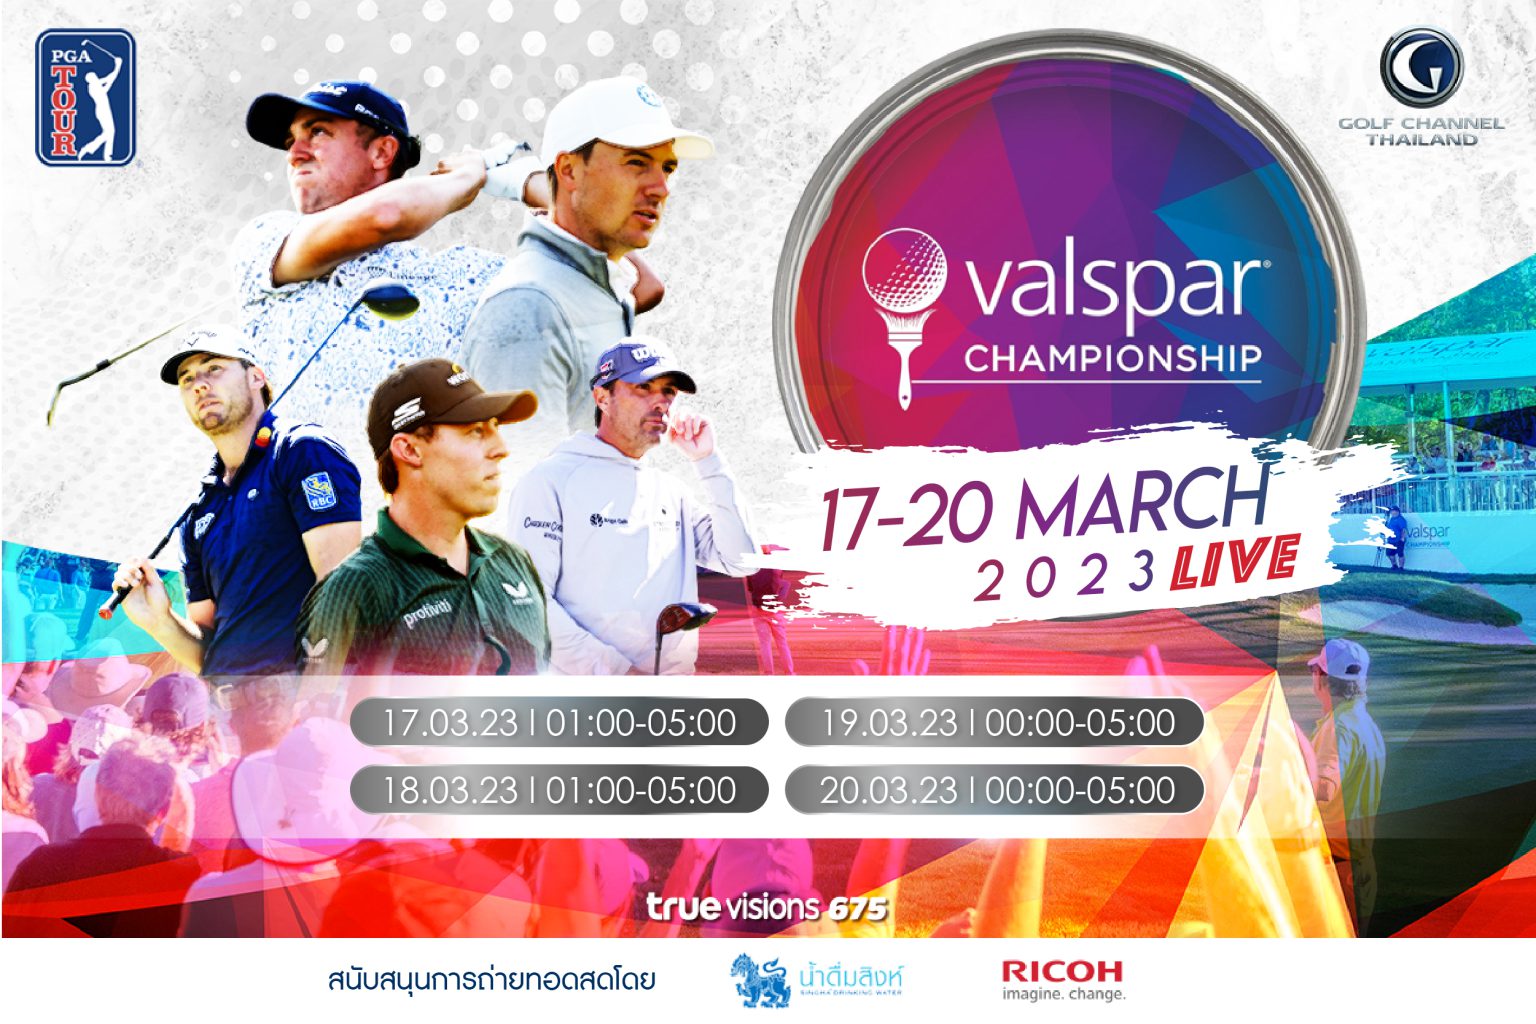 2023 PGA Tour Valspar Championship Golf Channel Thailand